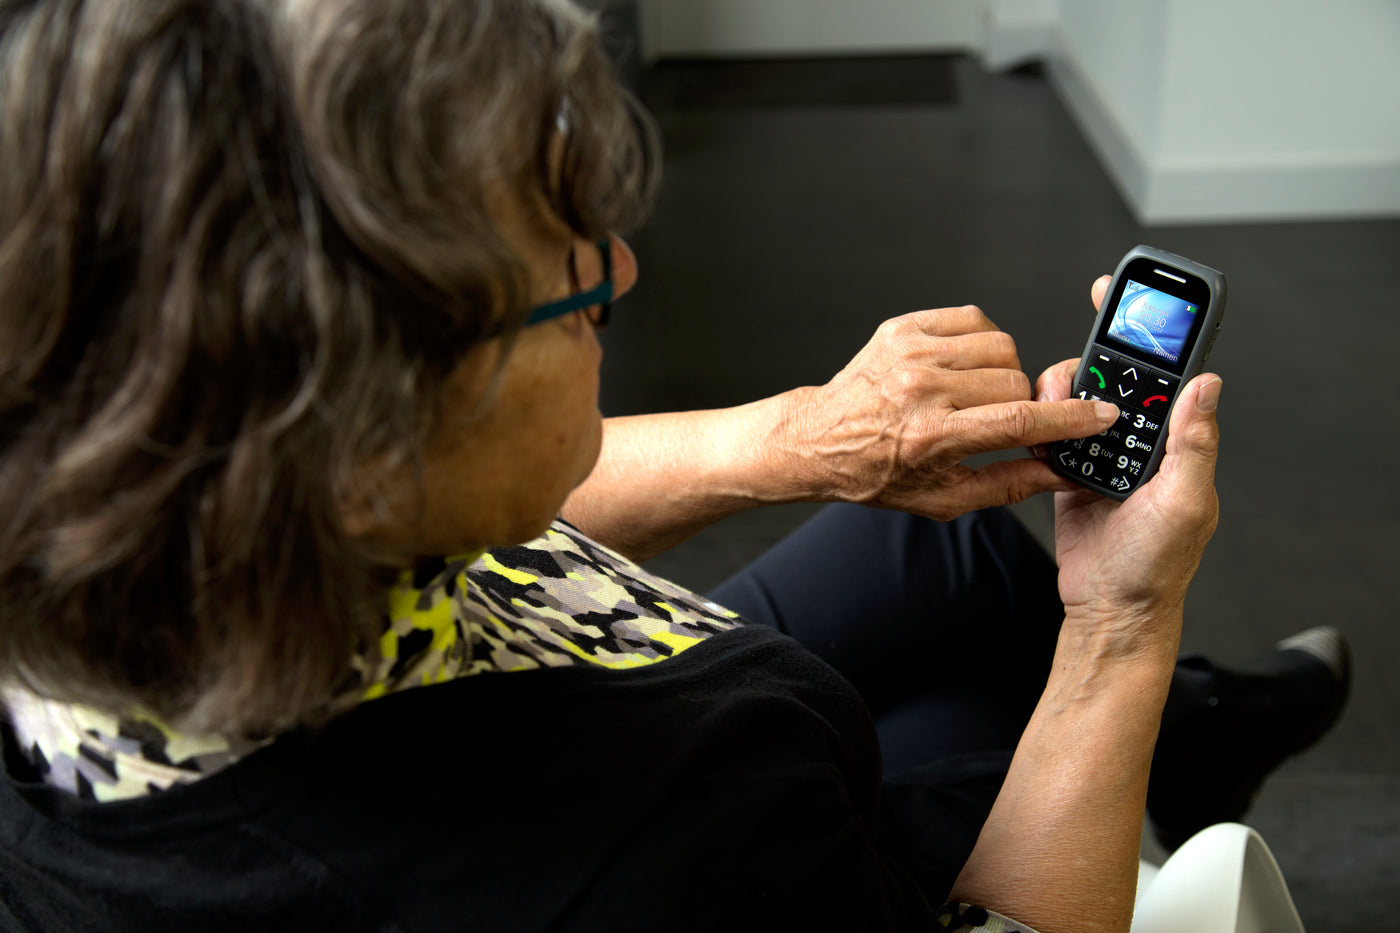 Fysic FM-7575 - Benutzerfreundliches Handy für Senioren mit Notruftaste, Schwarz